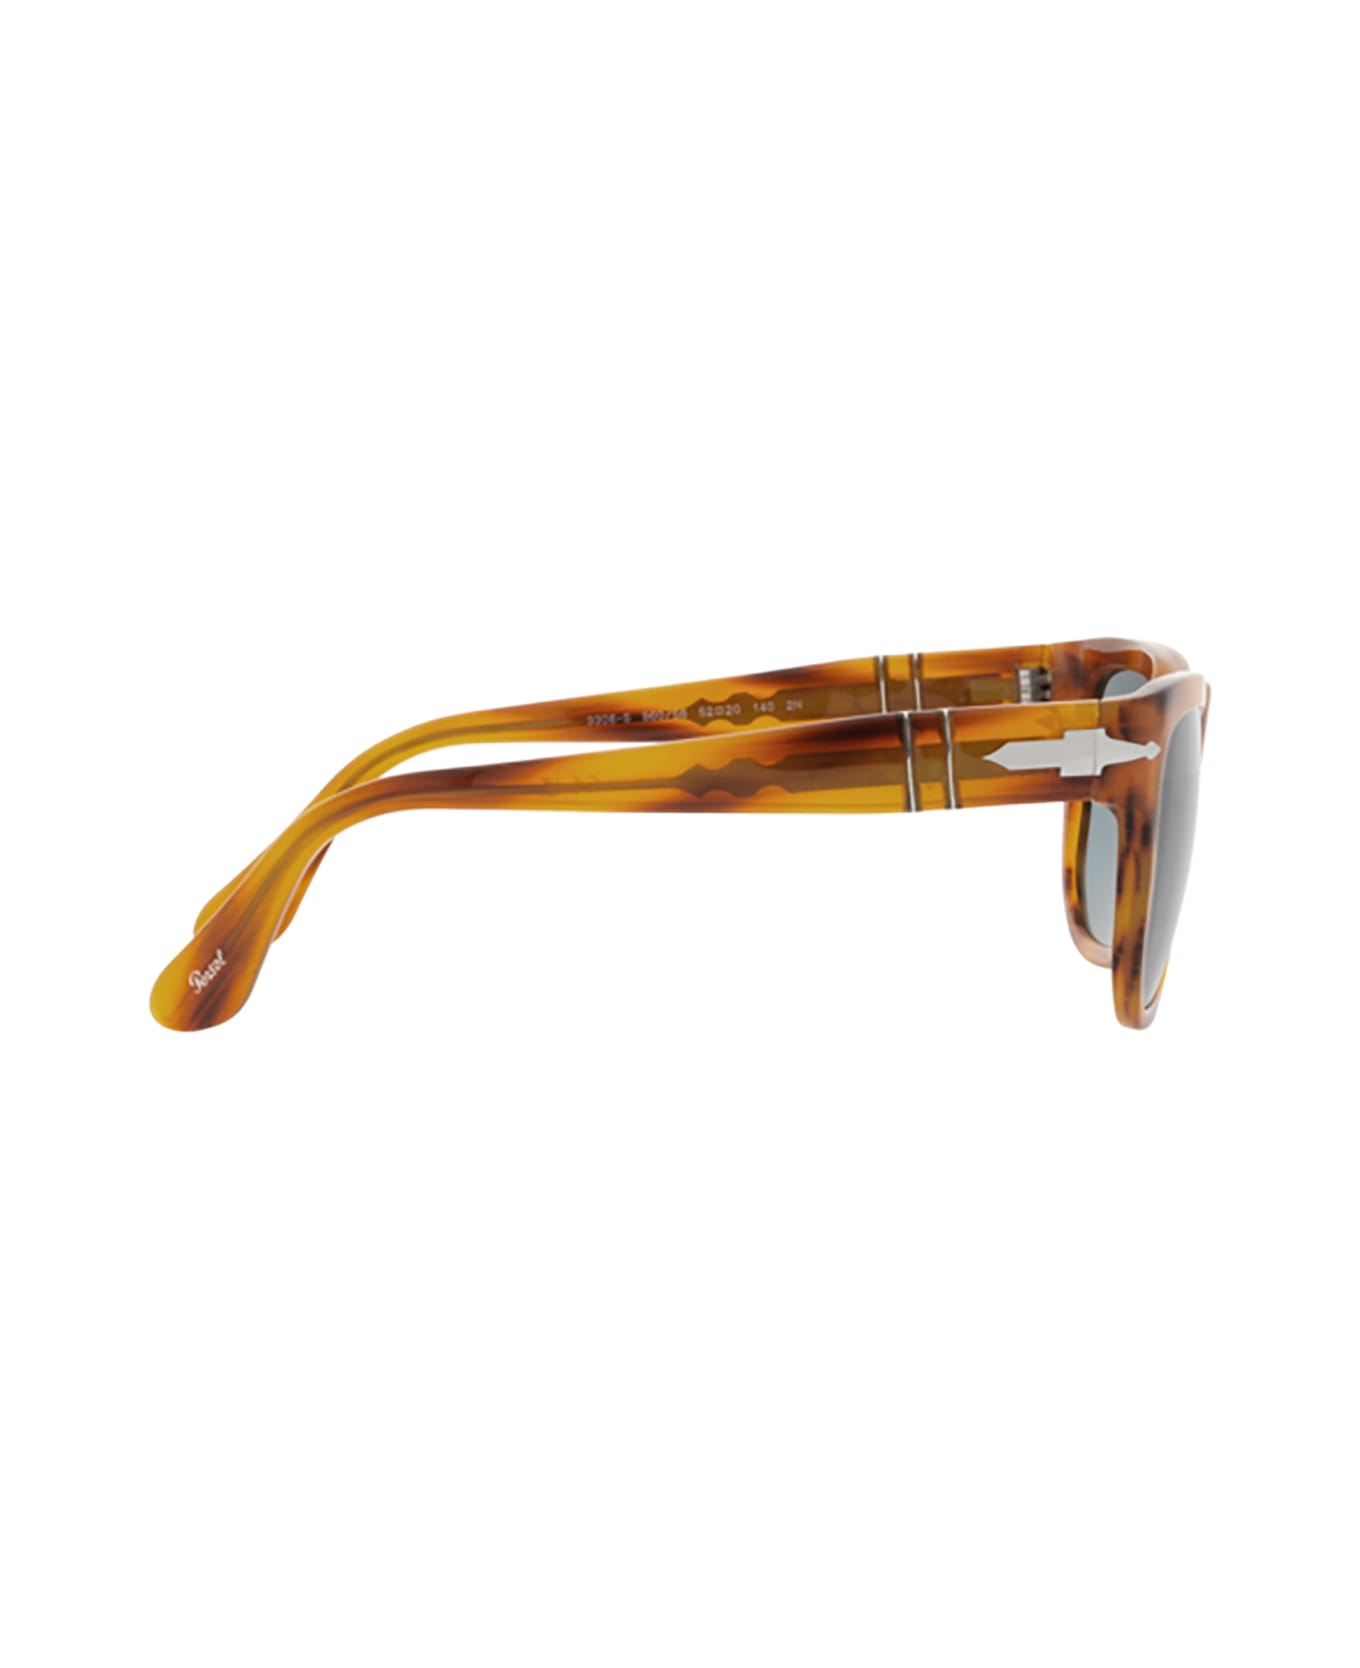 Persol Po3306s Striped Brown Sunglasses - Striped Brown